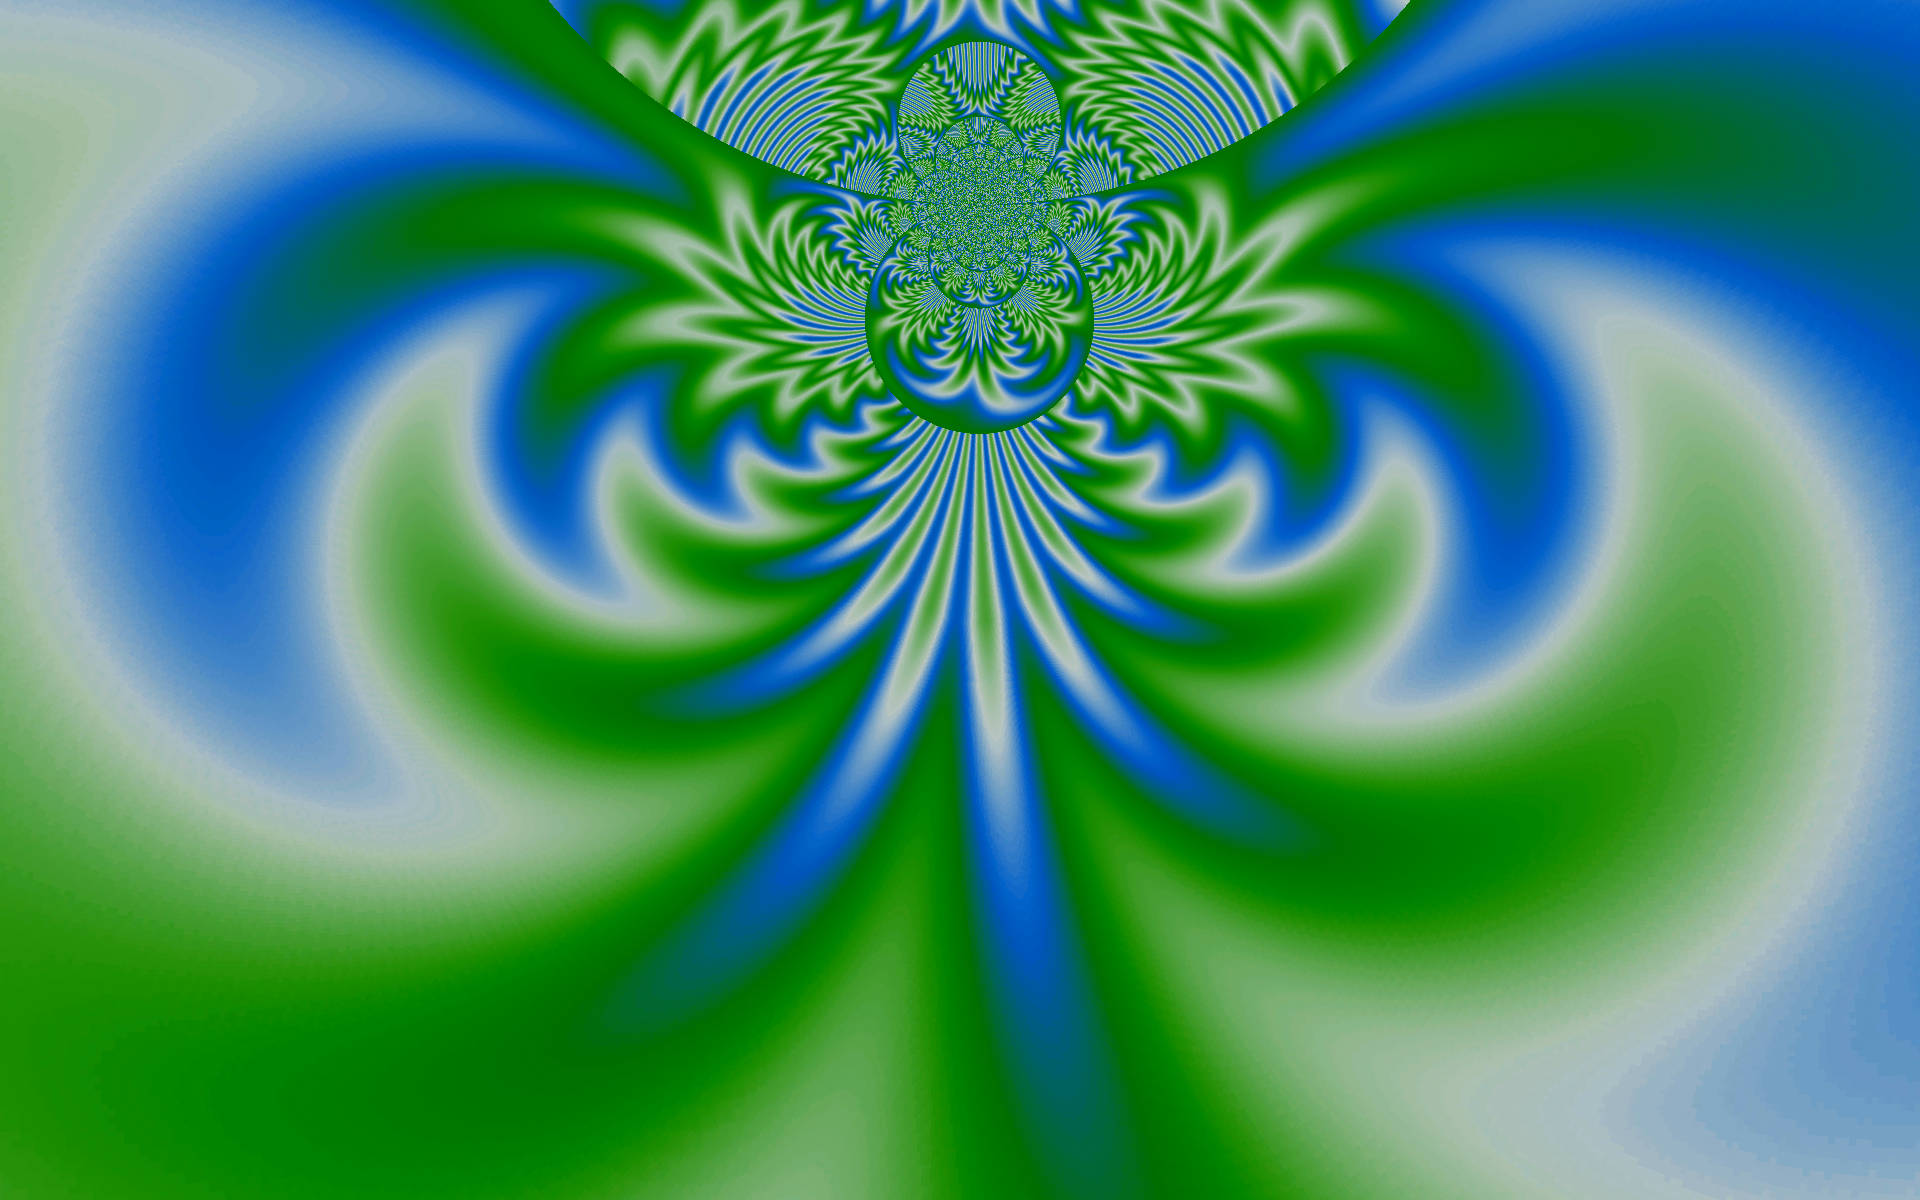 kaleidoscope, abstract, digital art, blue, green